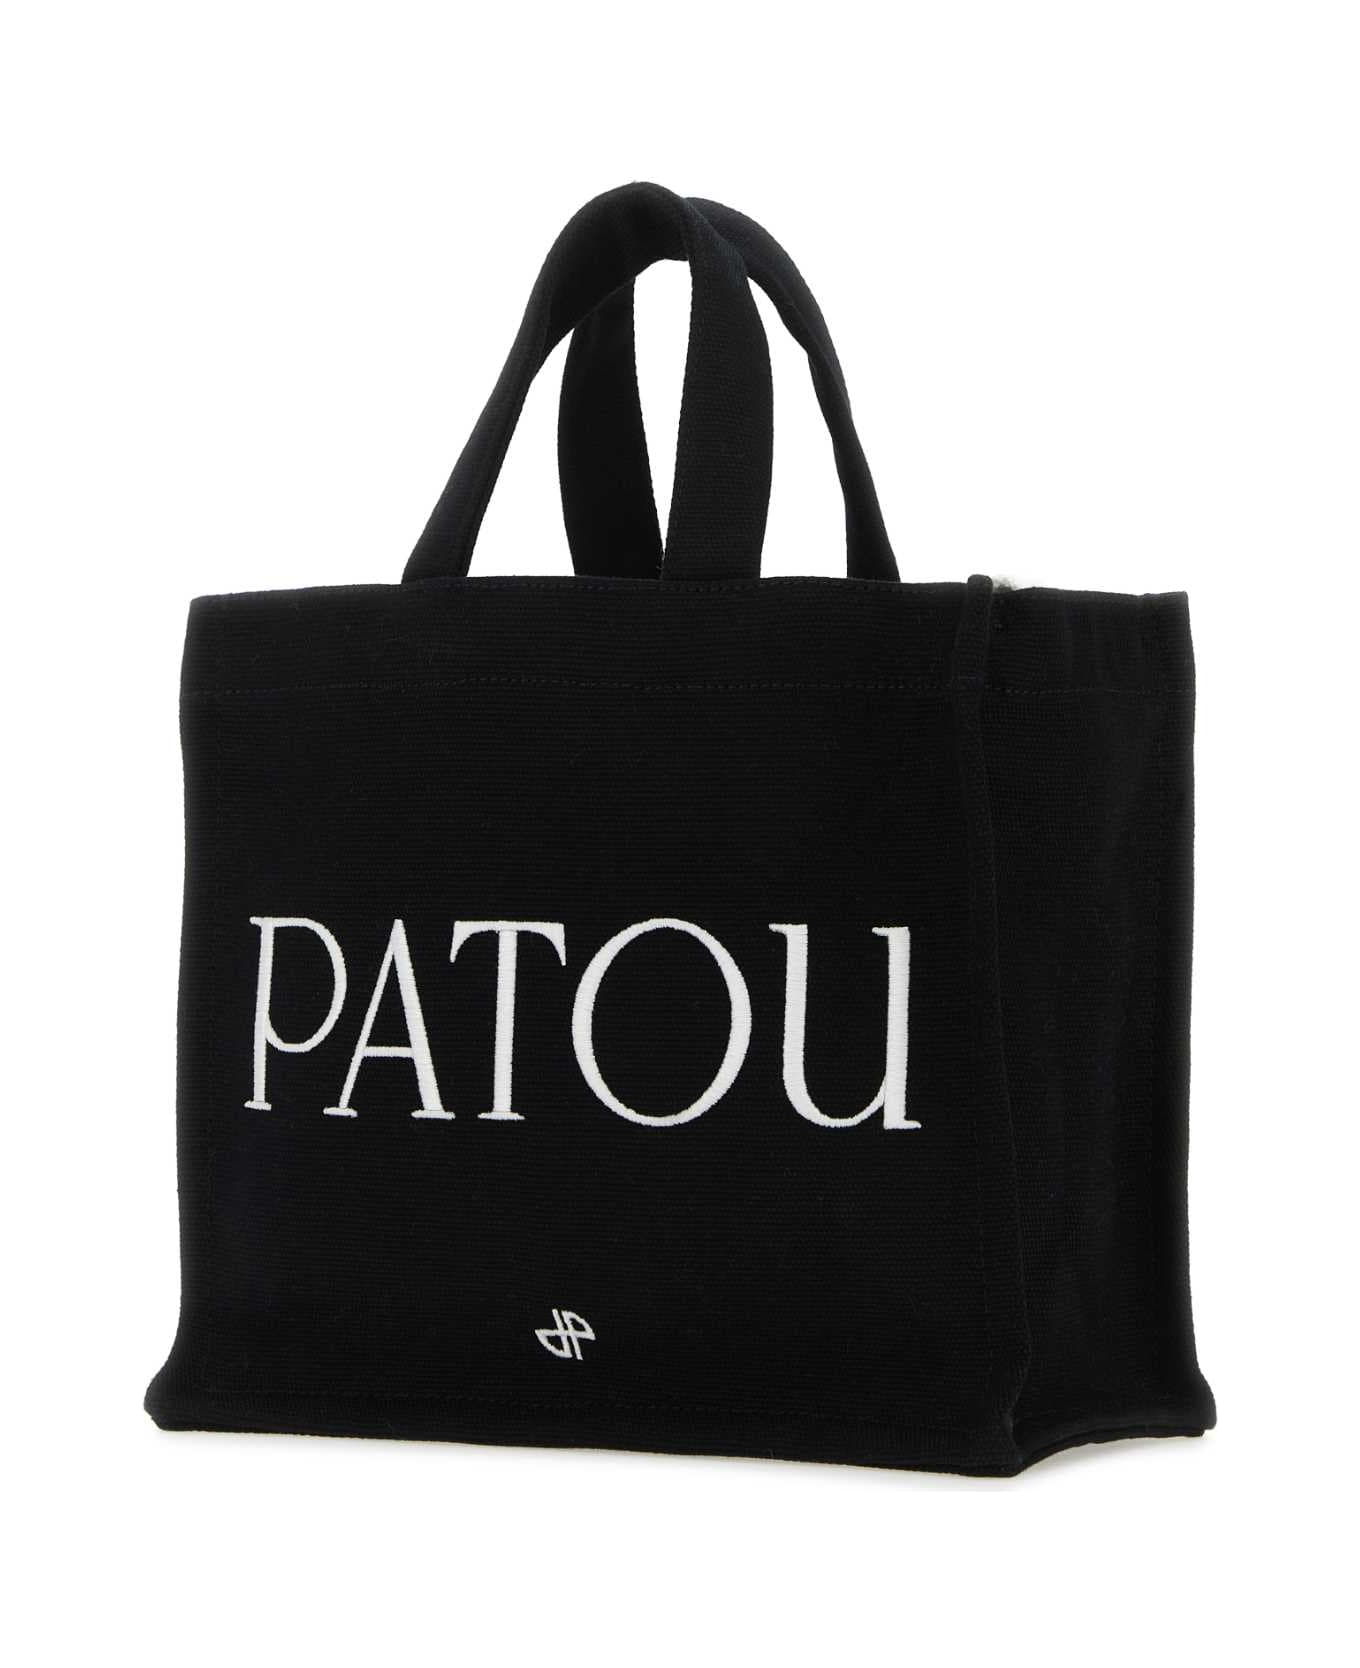 Patou Black Canvas Small Tote Patou Shopping Bag - BLACK トートバッグ